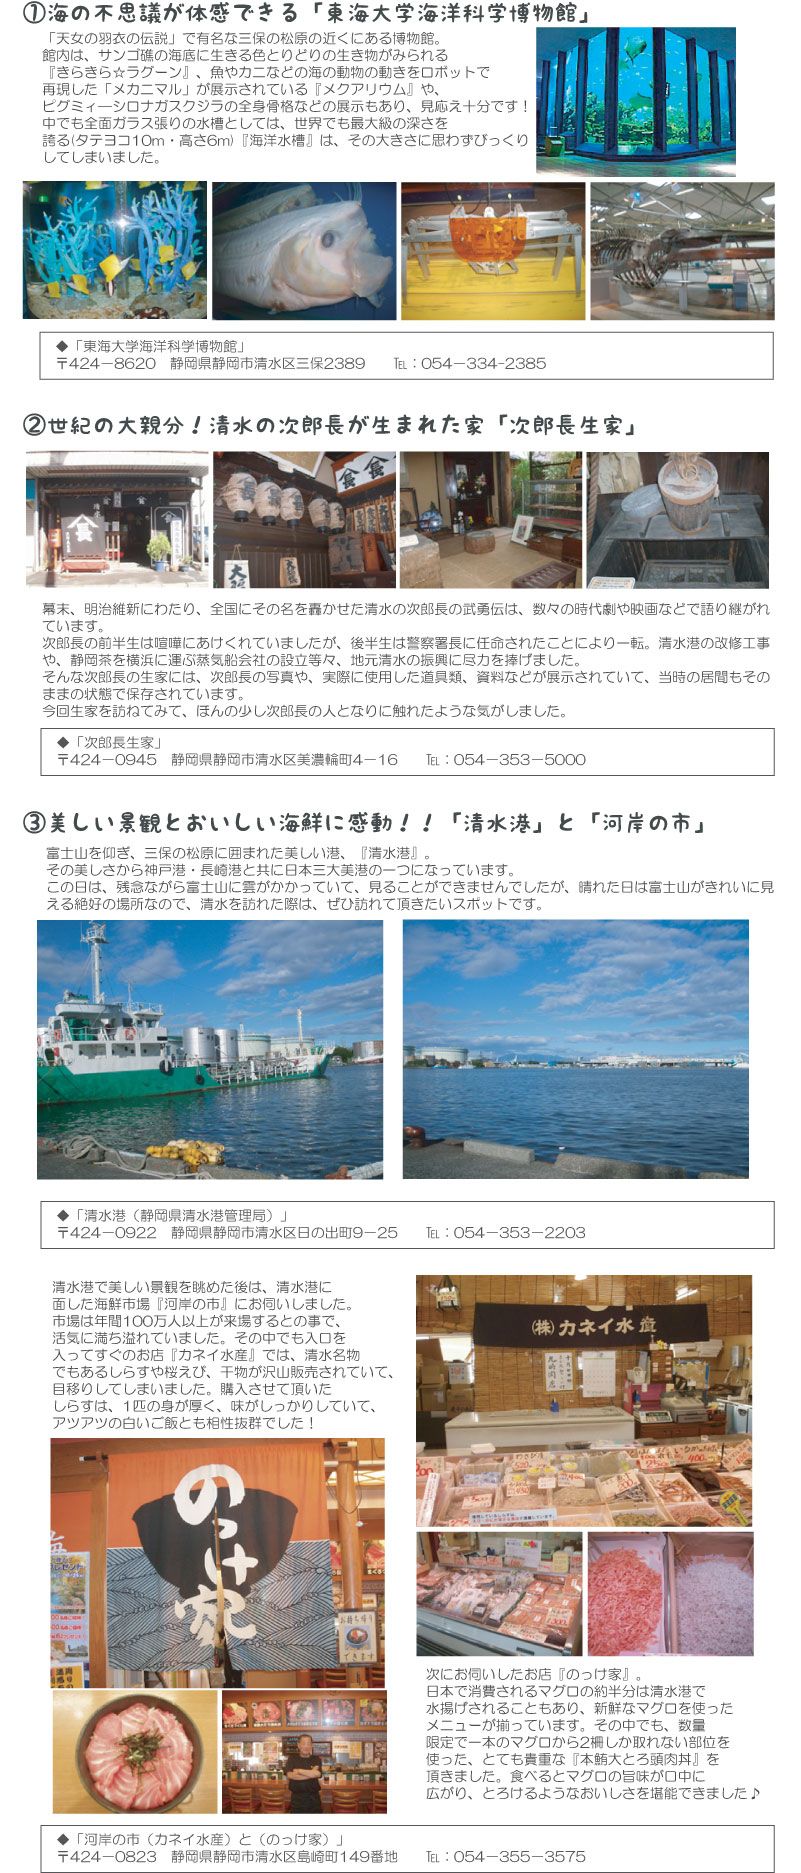 東海大学海洋科学博物館、次郎長生家、清水港、河岸の市